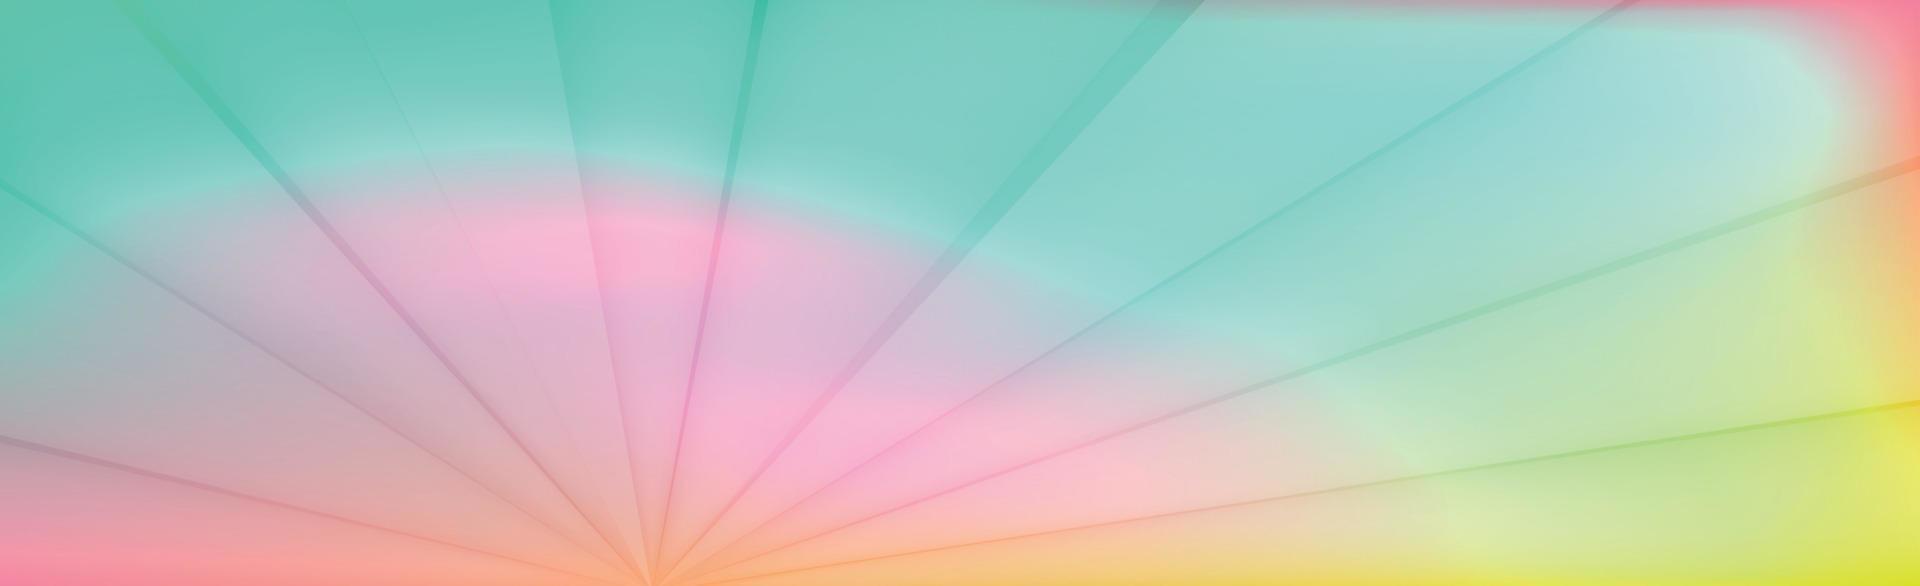 gradiente multicolorido de luz de fundo web abstrato panorâmico - vetor